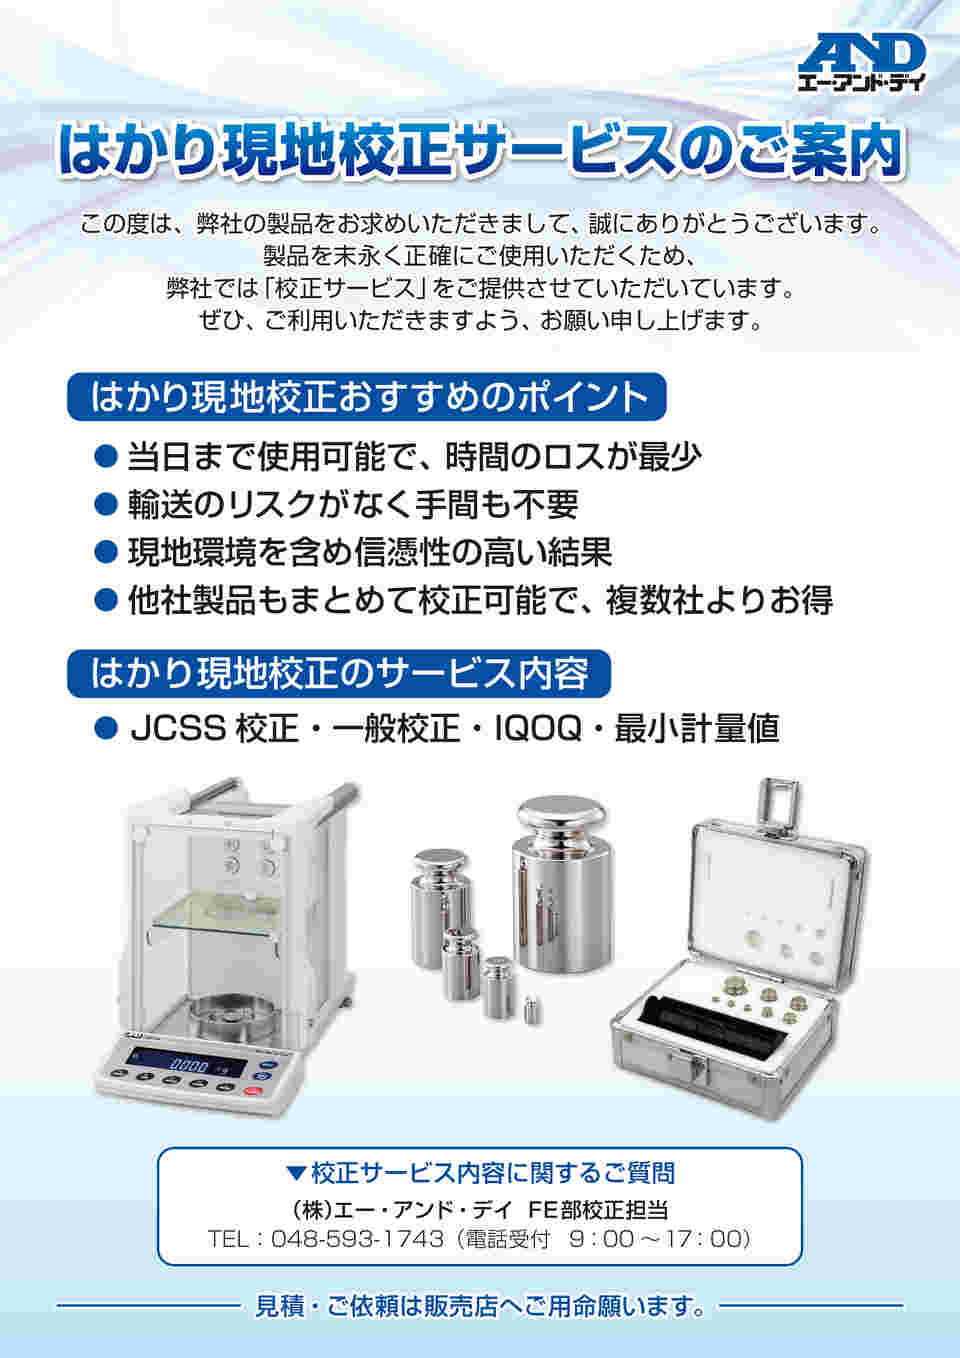 買取 沖縄 AD 防塵・防水デジタルはかり HL-3000LWP ひょう量:3000g 最小表示:1g 皿寸法:174(W)*137(D)  コーヒー、ティー用品